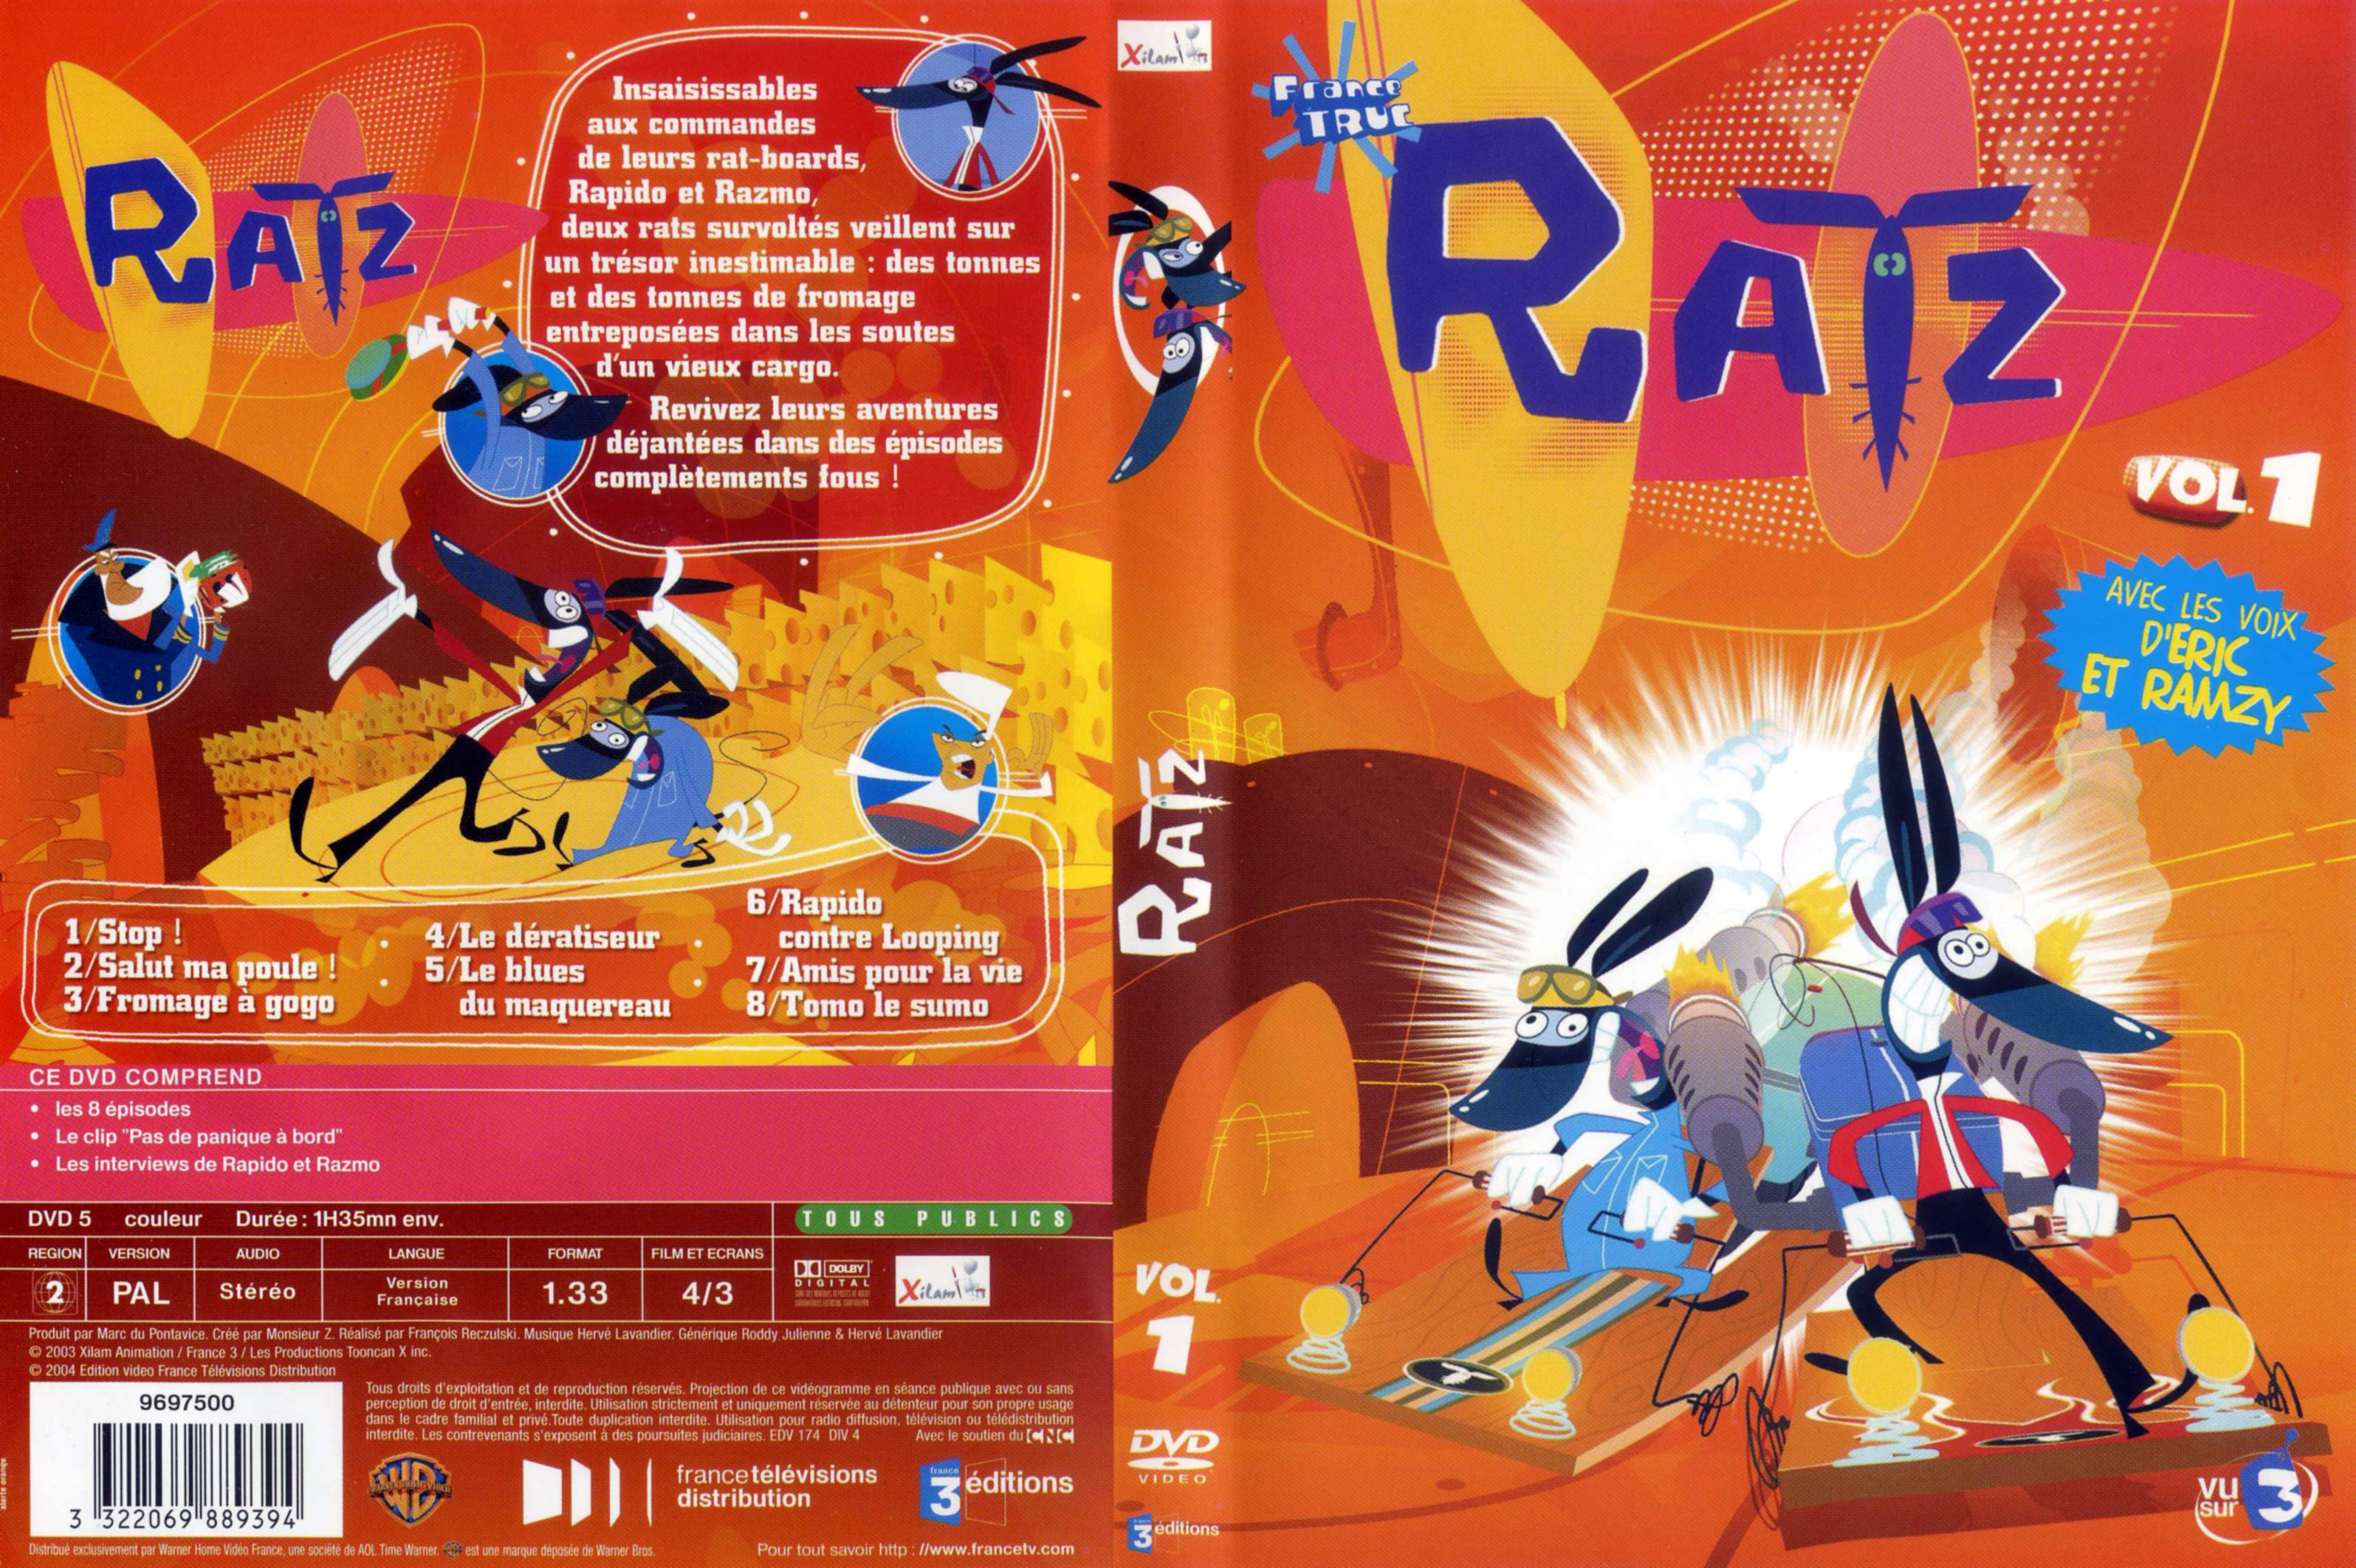 Jaquette DVD Ratz vol 01